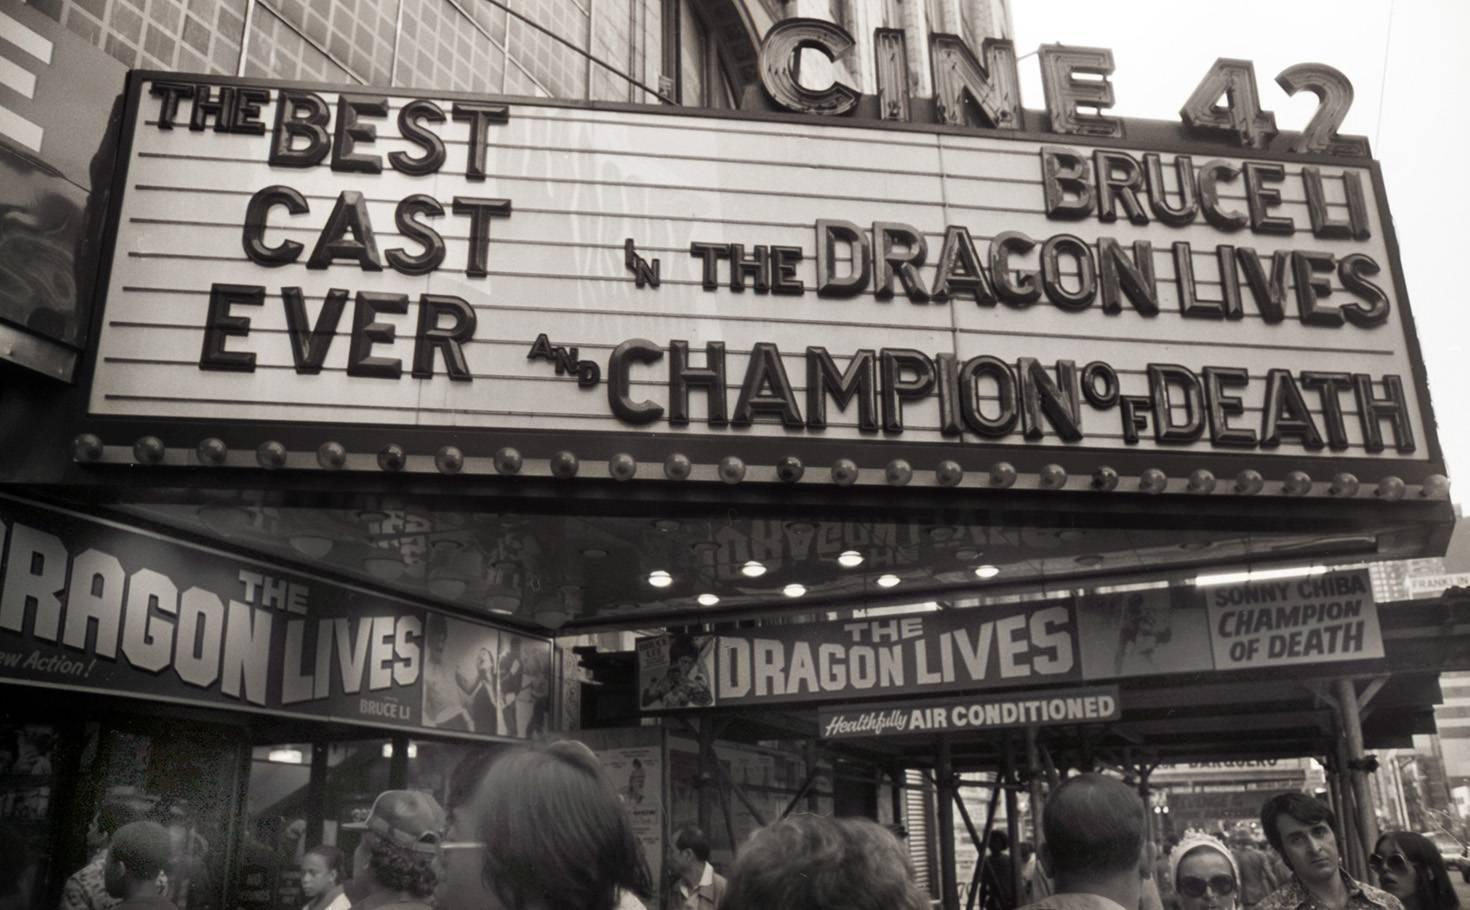 « The Dragon Lives » (Le dragon vit), Times Square New York, 1978